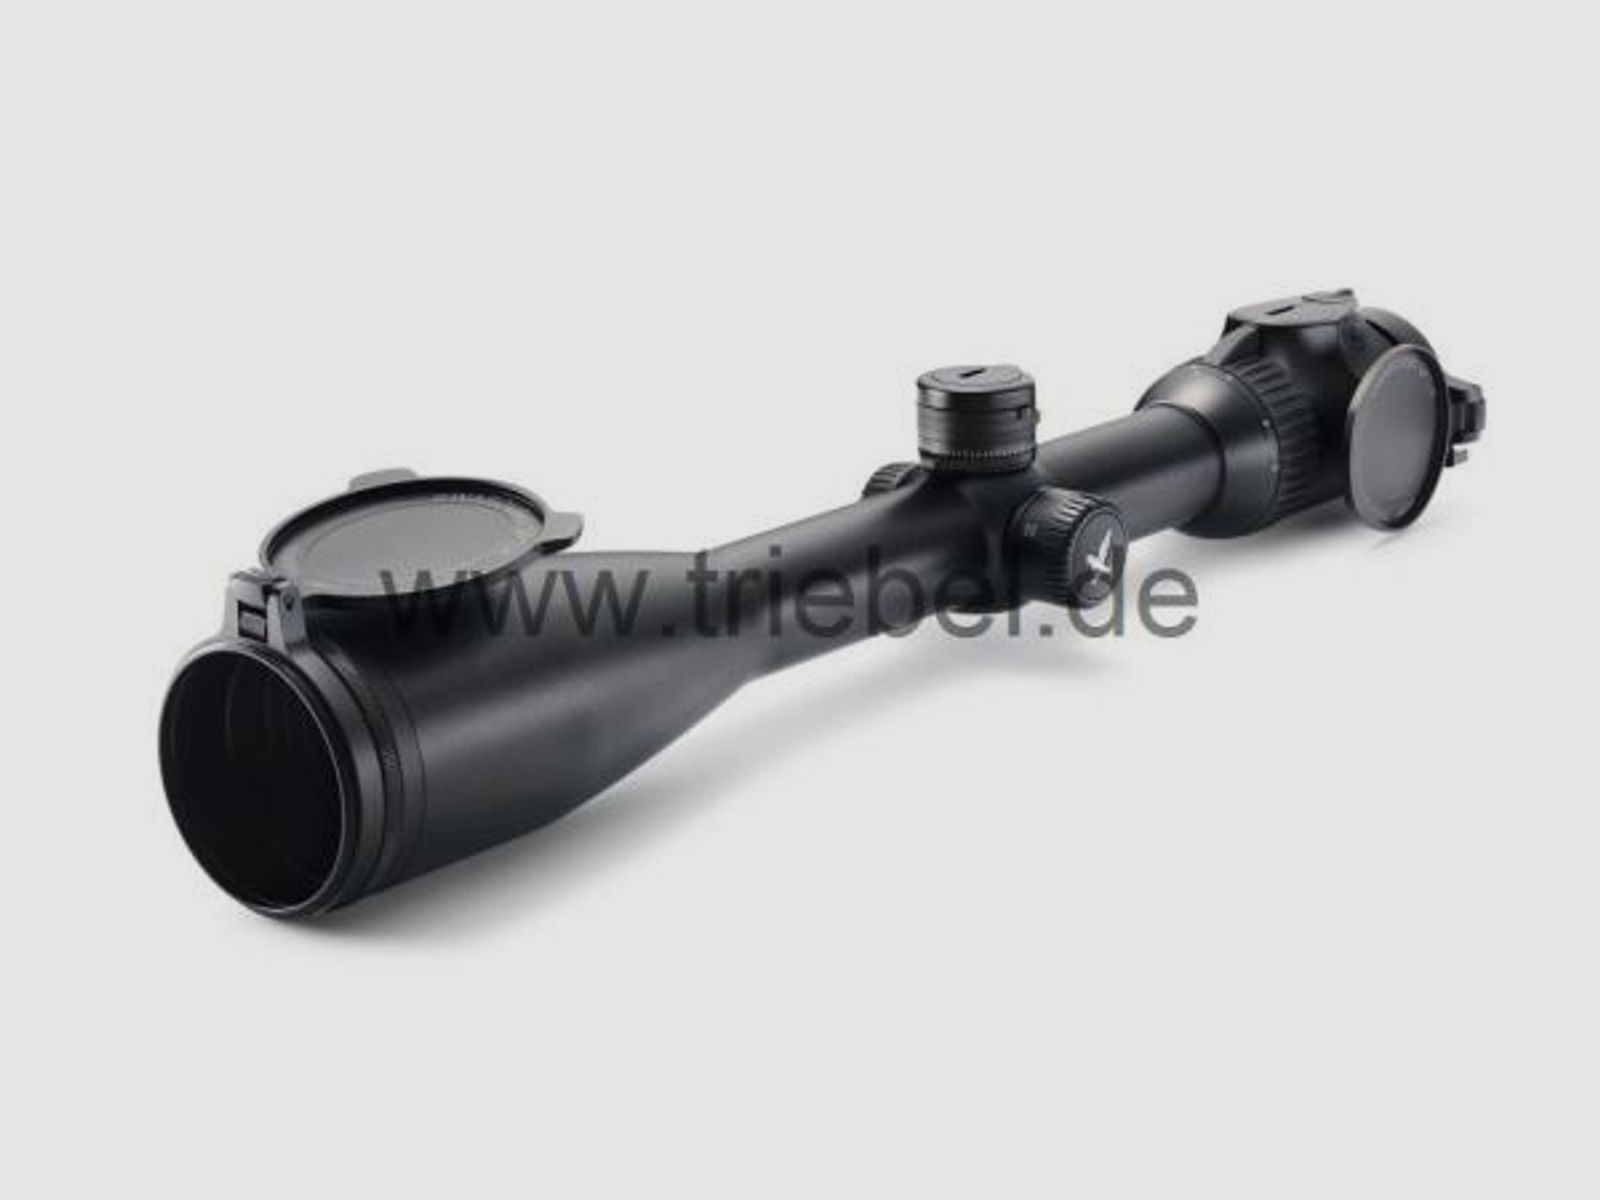 SWAROVSKI Zubehör für Zielfernrohre Objektivdeckel 42 mm SLP-O-42 f. Z8i, Z6(i), Z5, Z3, X5(i)